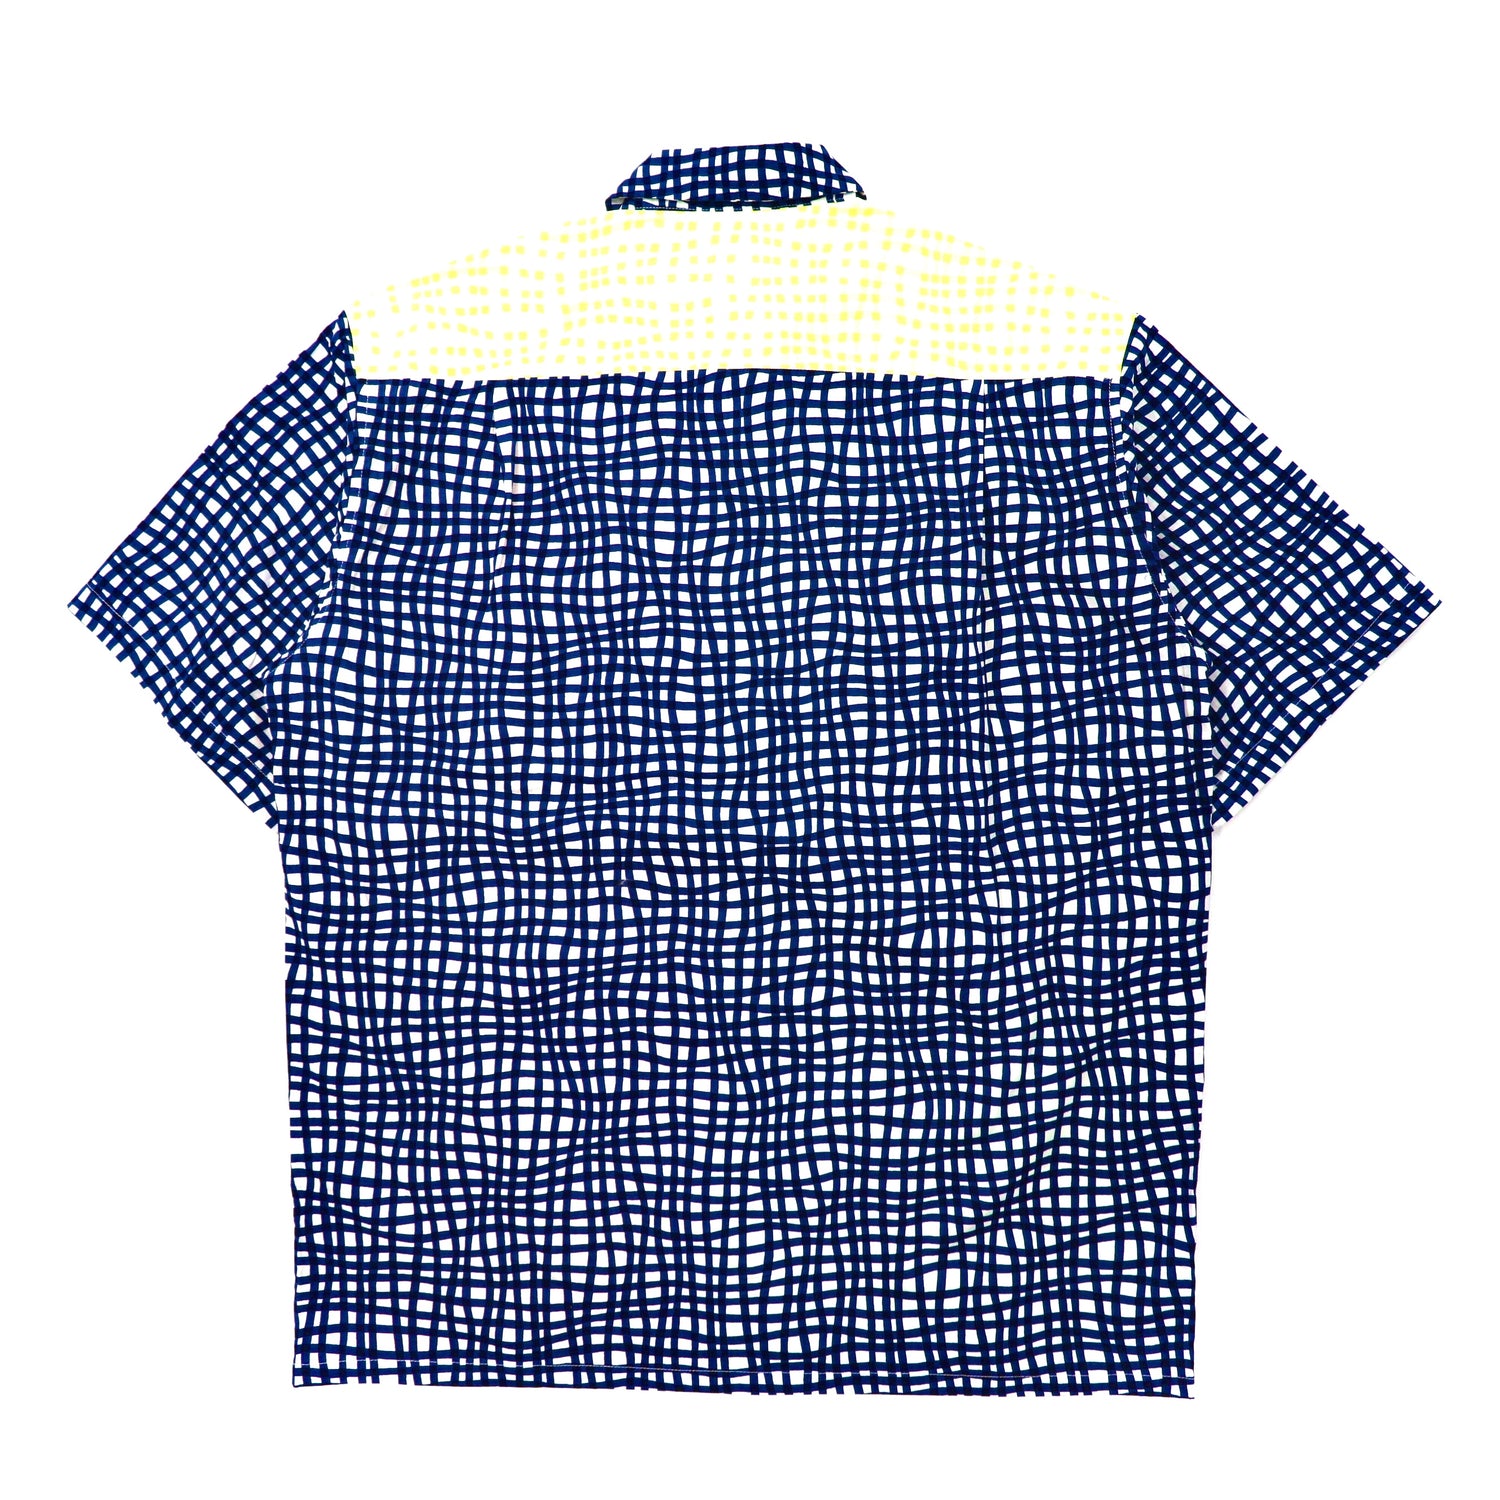 Luna's Hello ! 半袖オープンカラーシャツ XL マルチカラー クレイジーパターン 総柄 ビッグサイズ 未使用品